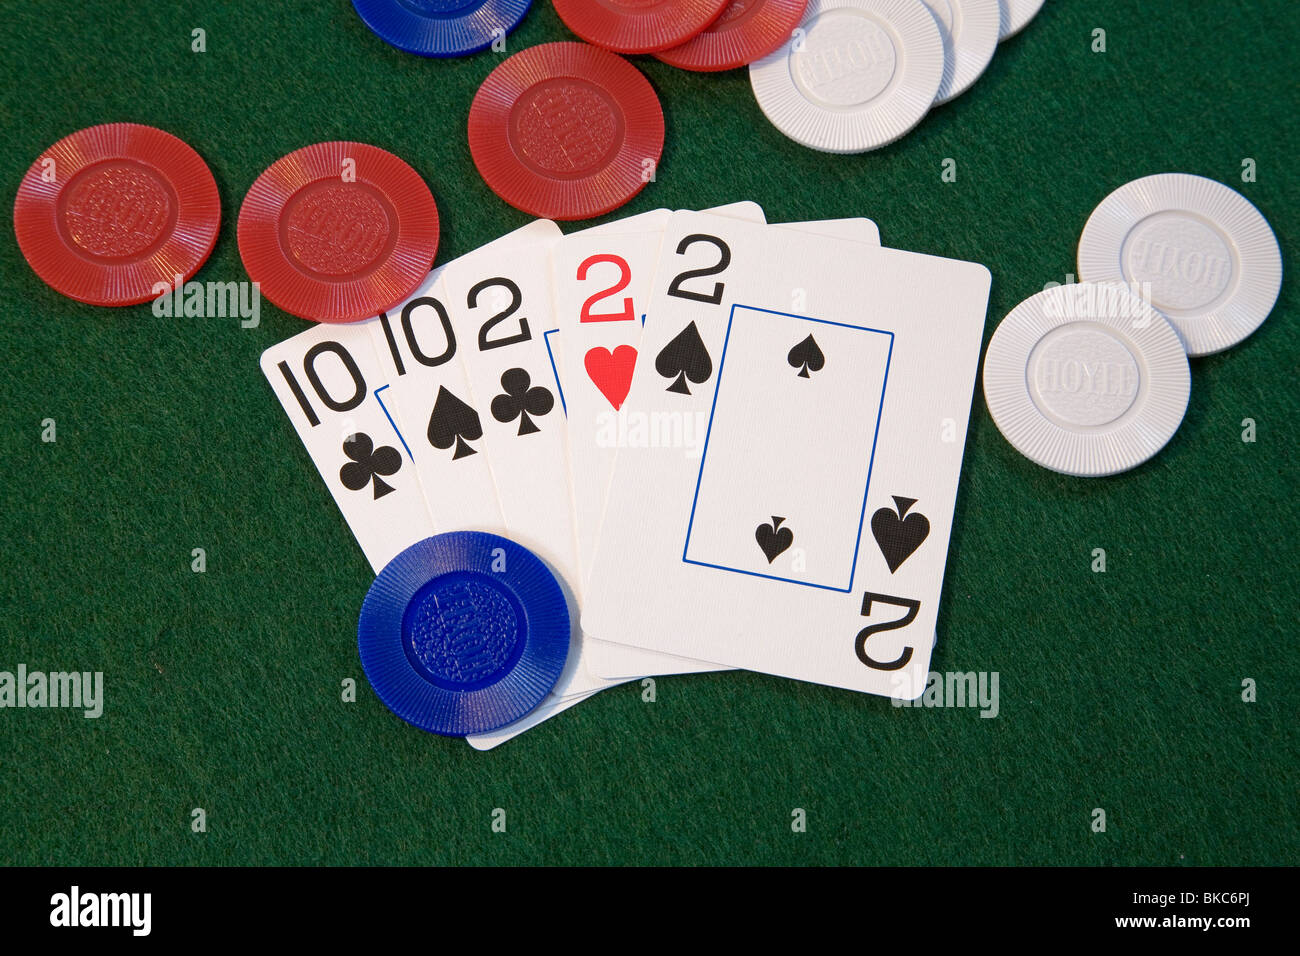 Un 'full house' mano di poker, treys e decine, una buona mano di poker a Five card draw o stud poker mazzo di carte gioco del poker Foto Stock